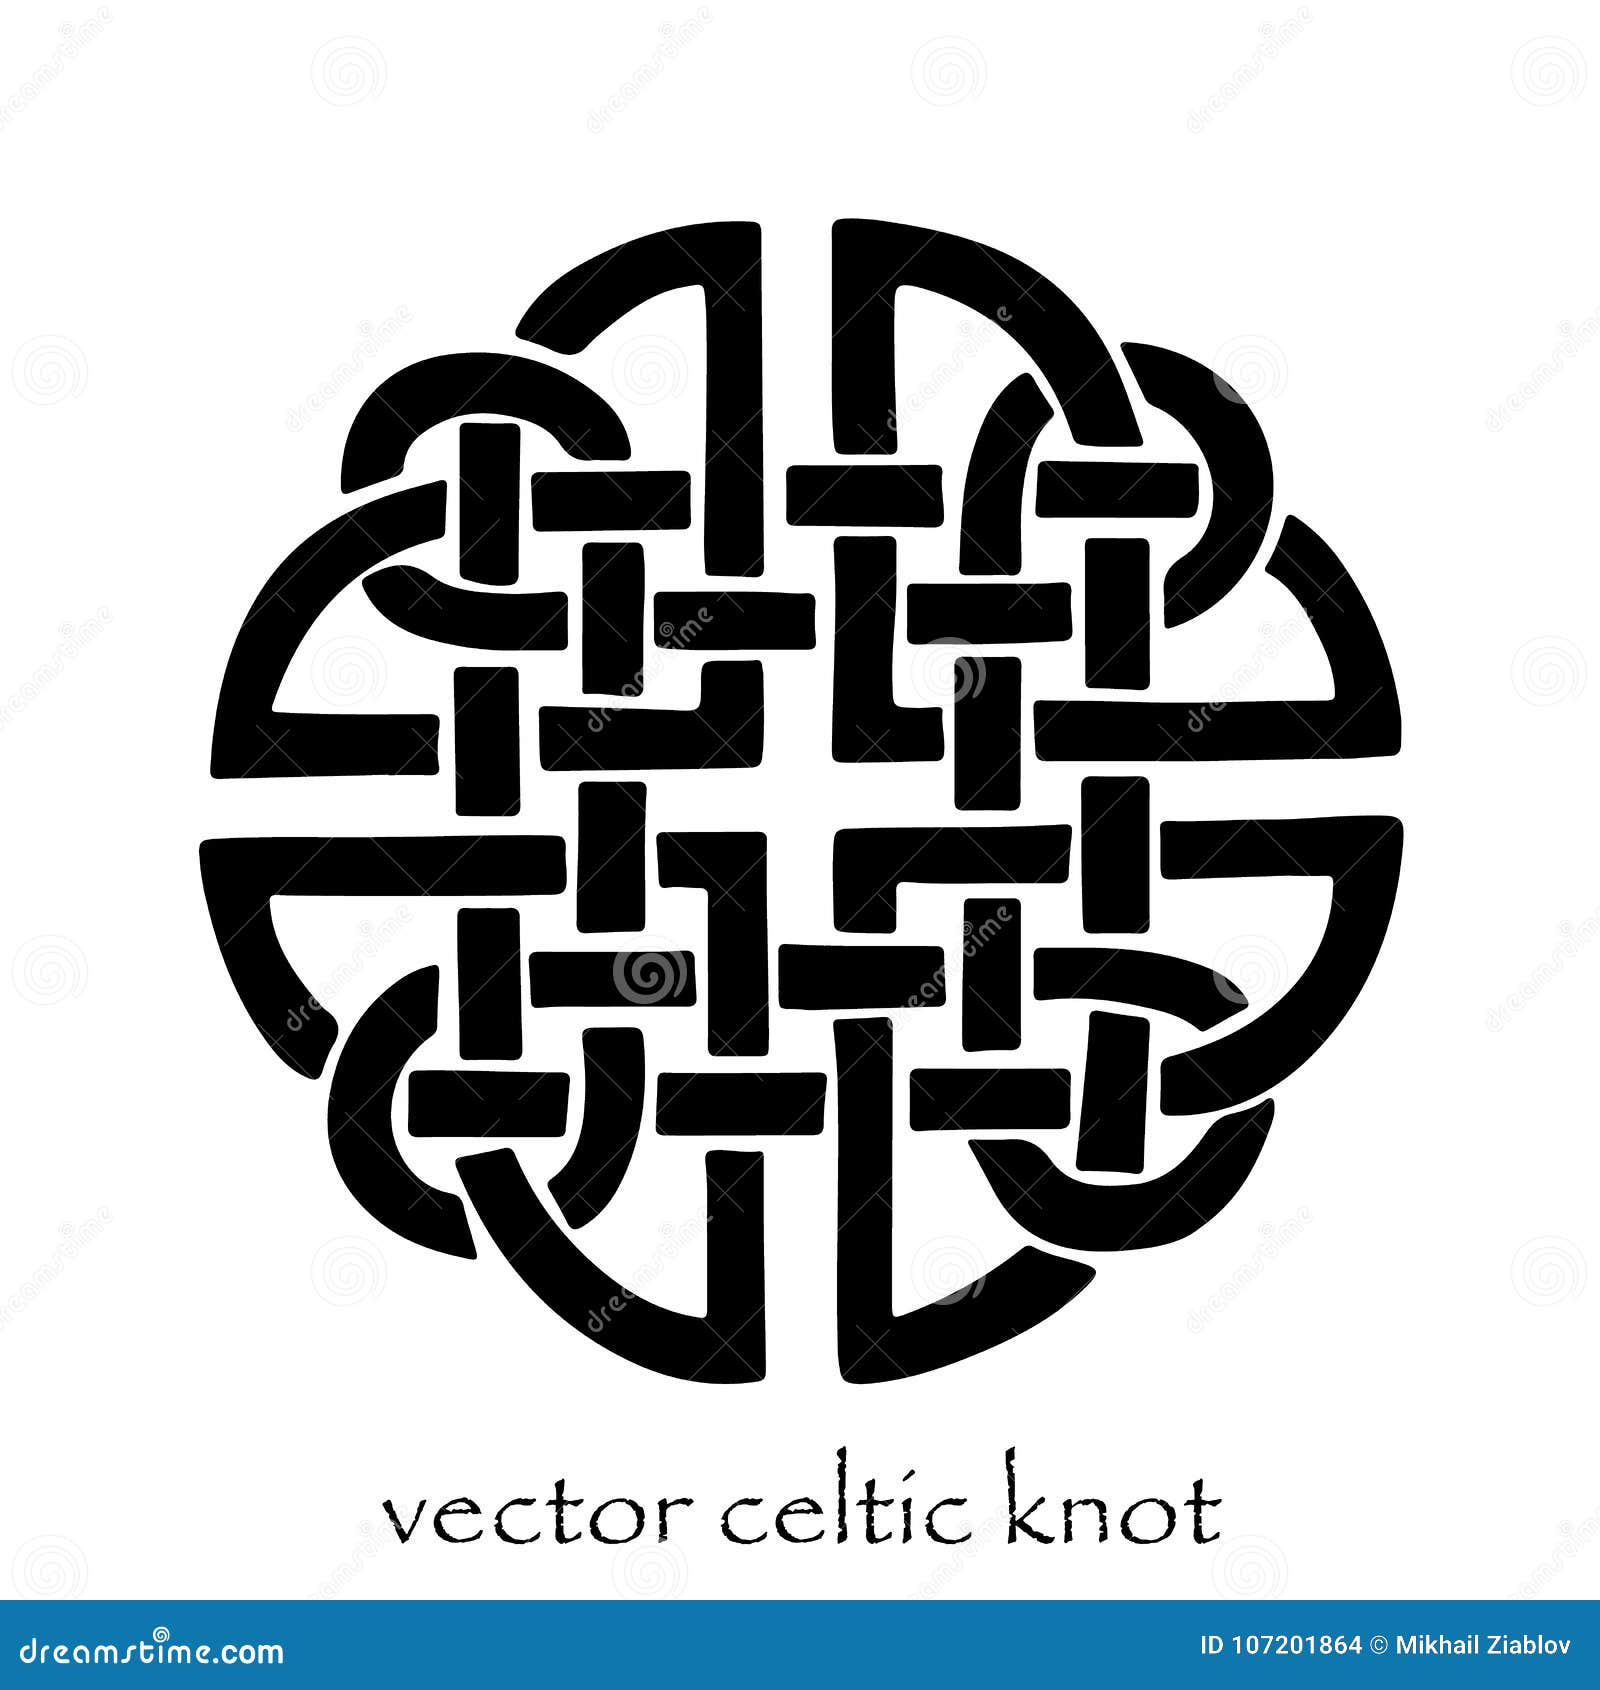 authentic black-white  celtic knot